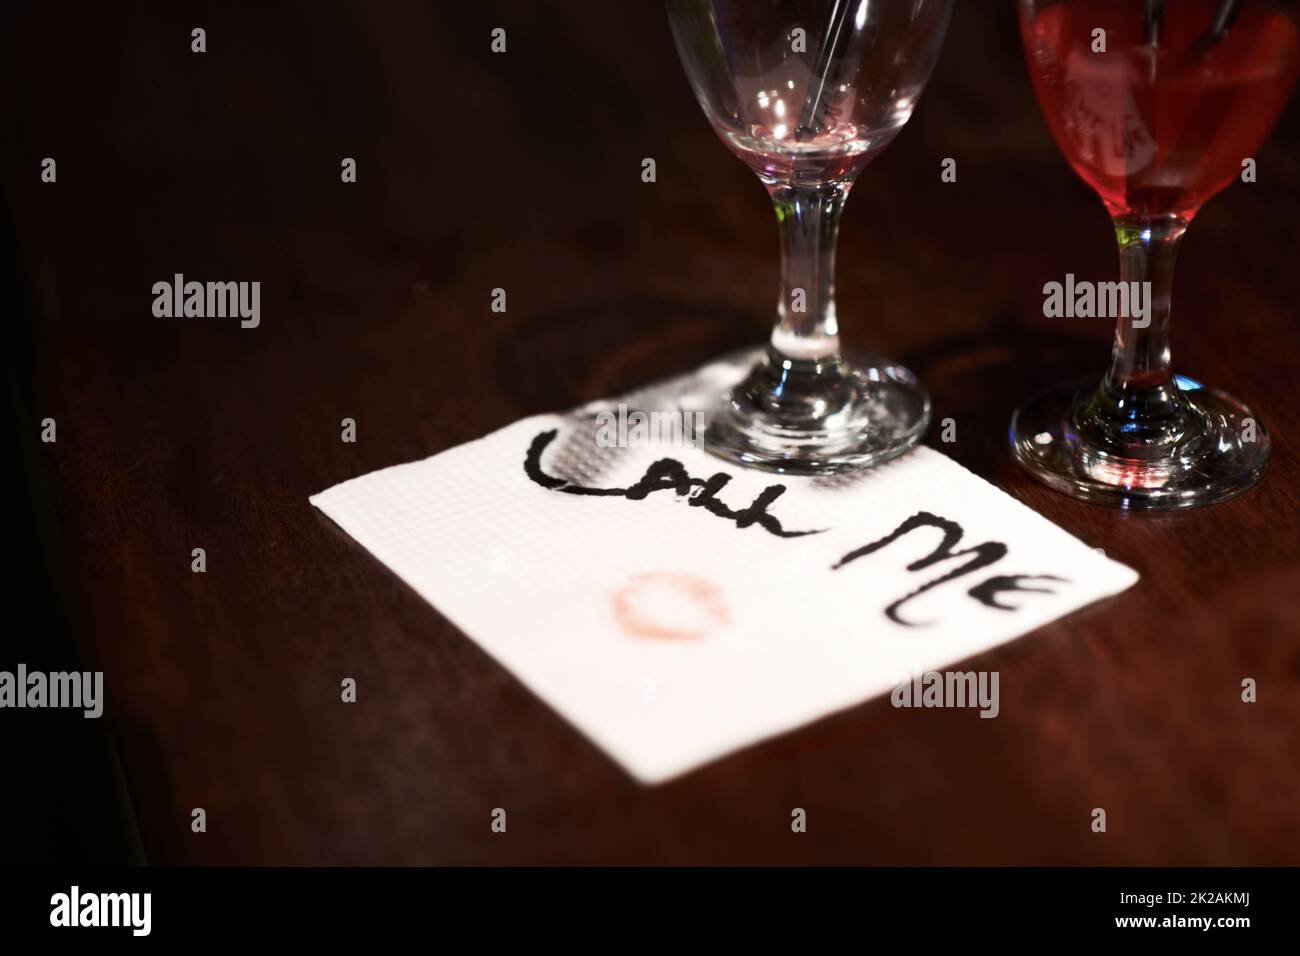 Get the message. Closeup of a flirtatious message written on a napkin on a bar counter. Stock Photo